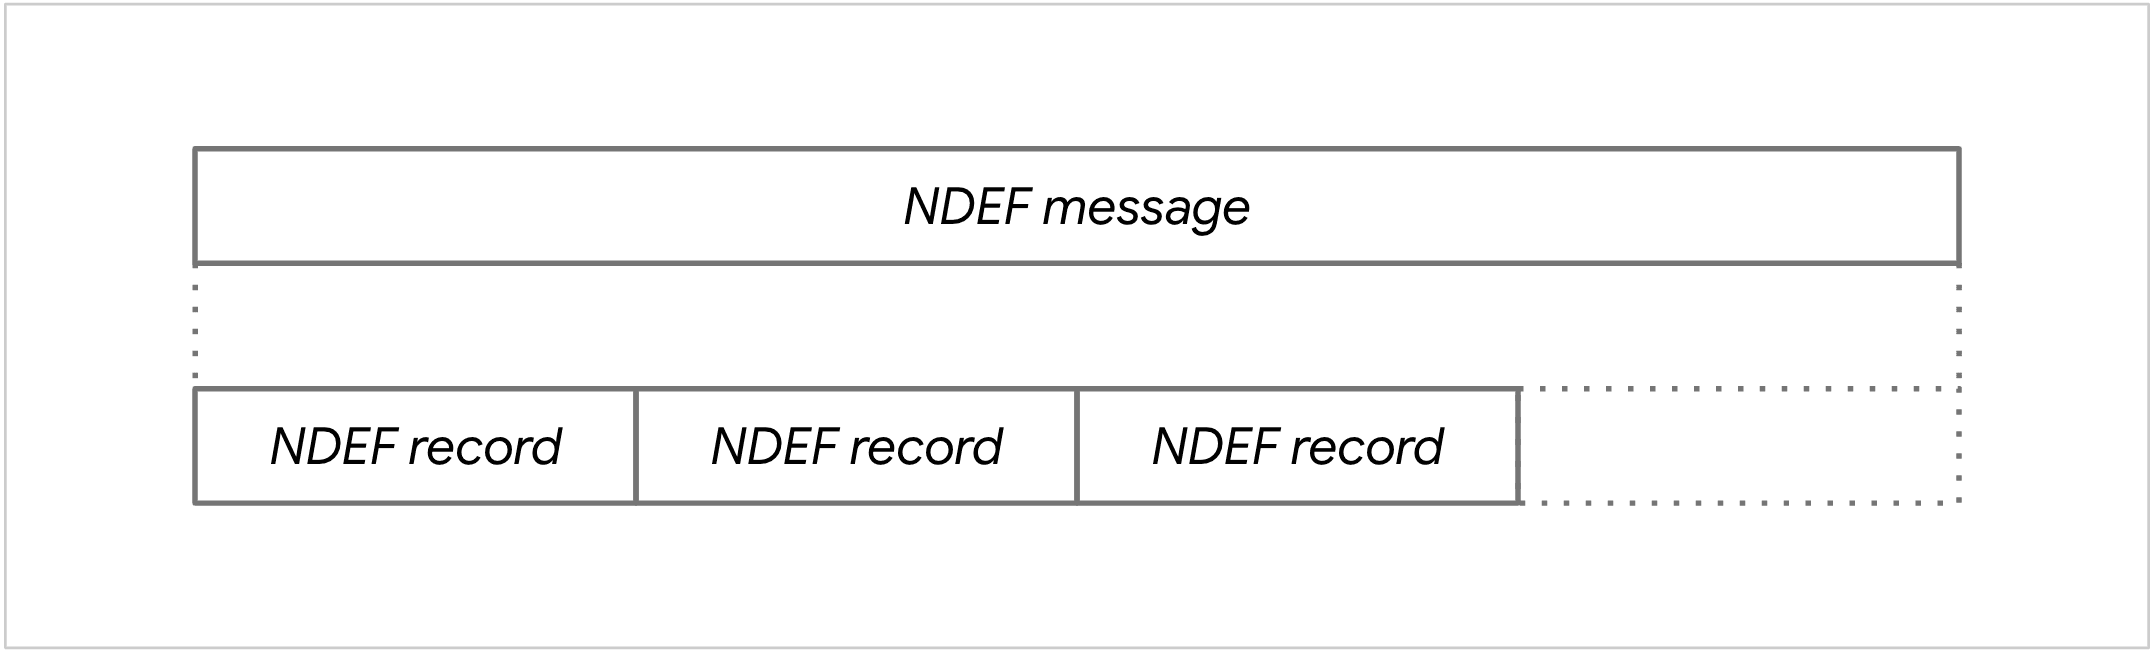 תרשים של הודעת NDEF